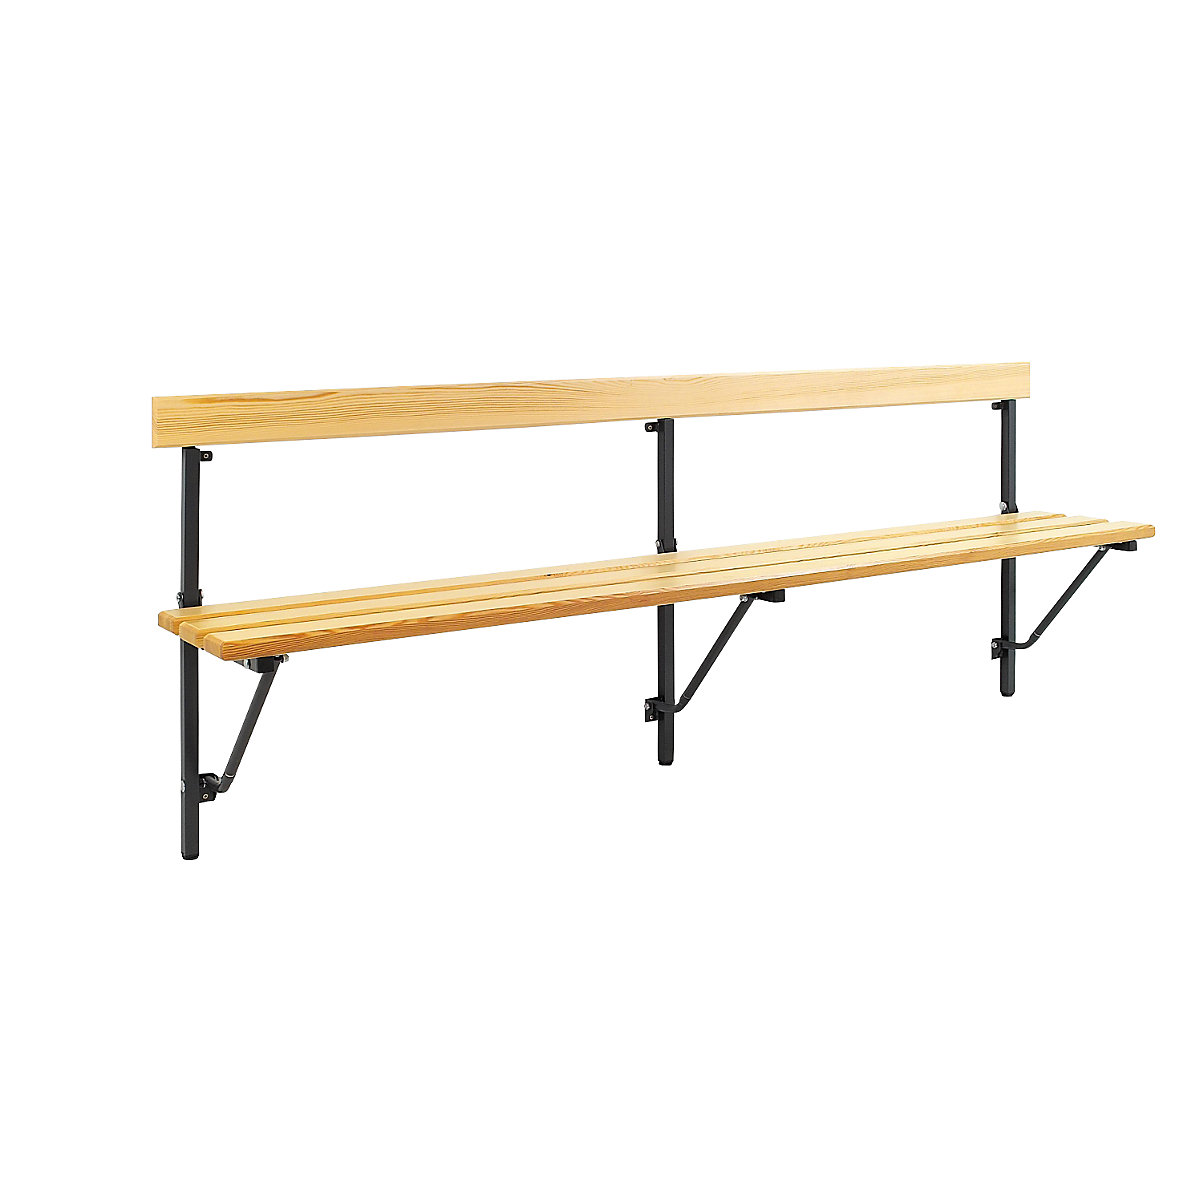 Sypro – Sklopná nástenná lavica, sklopná, dĺžka do 2000 mm, s drevenými lamelami